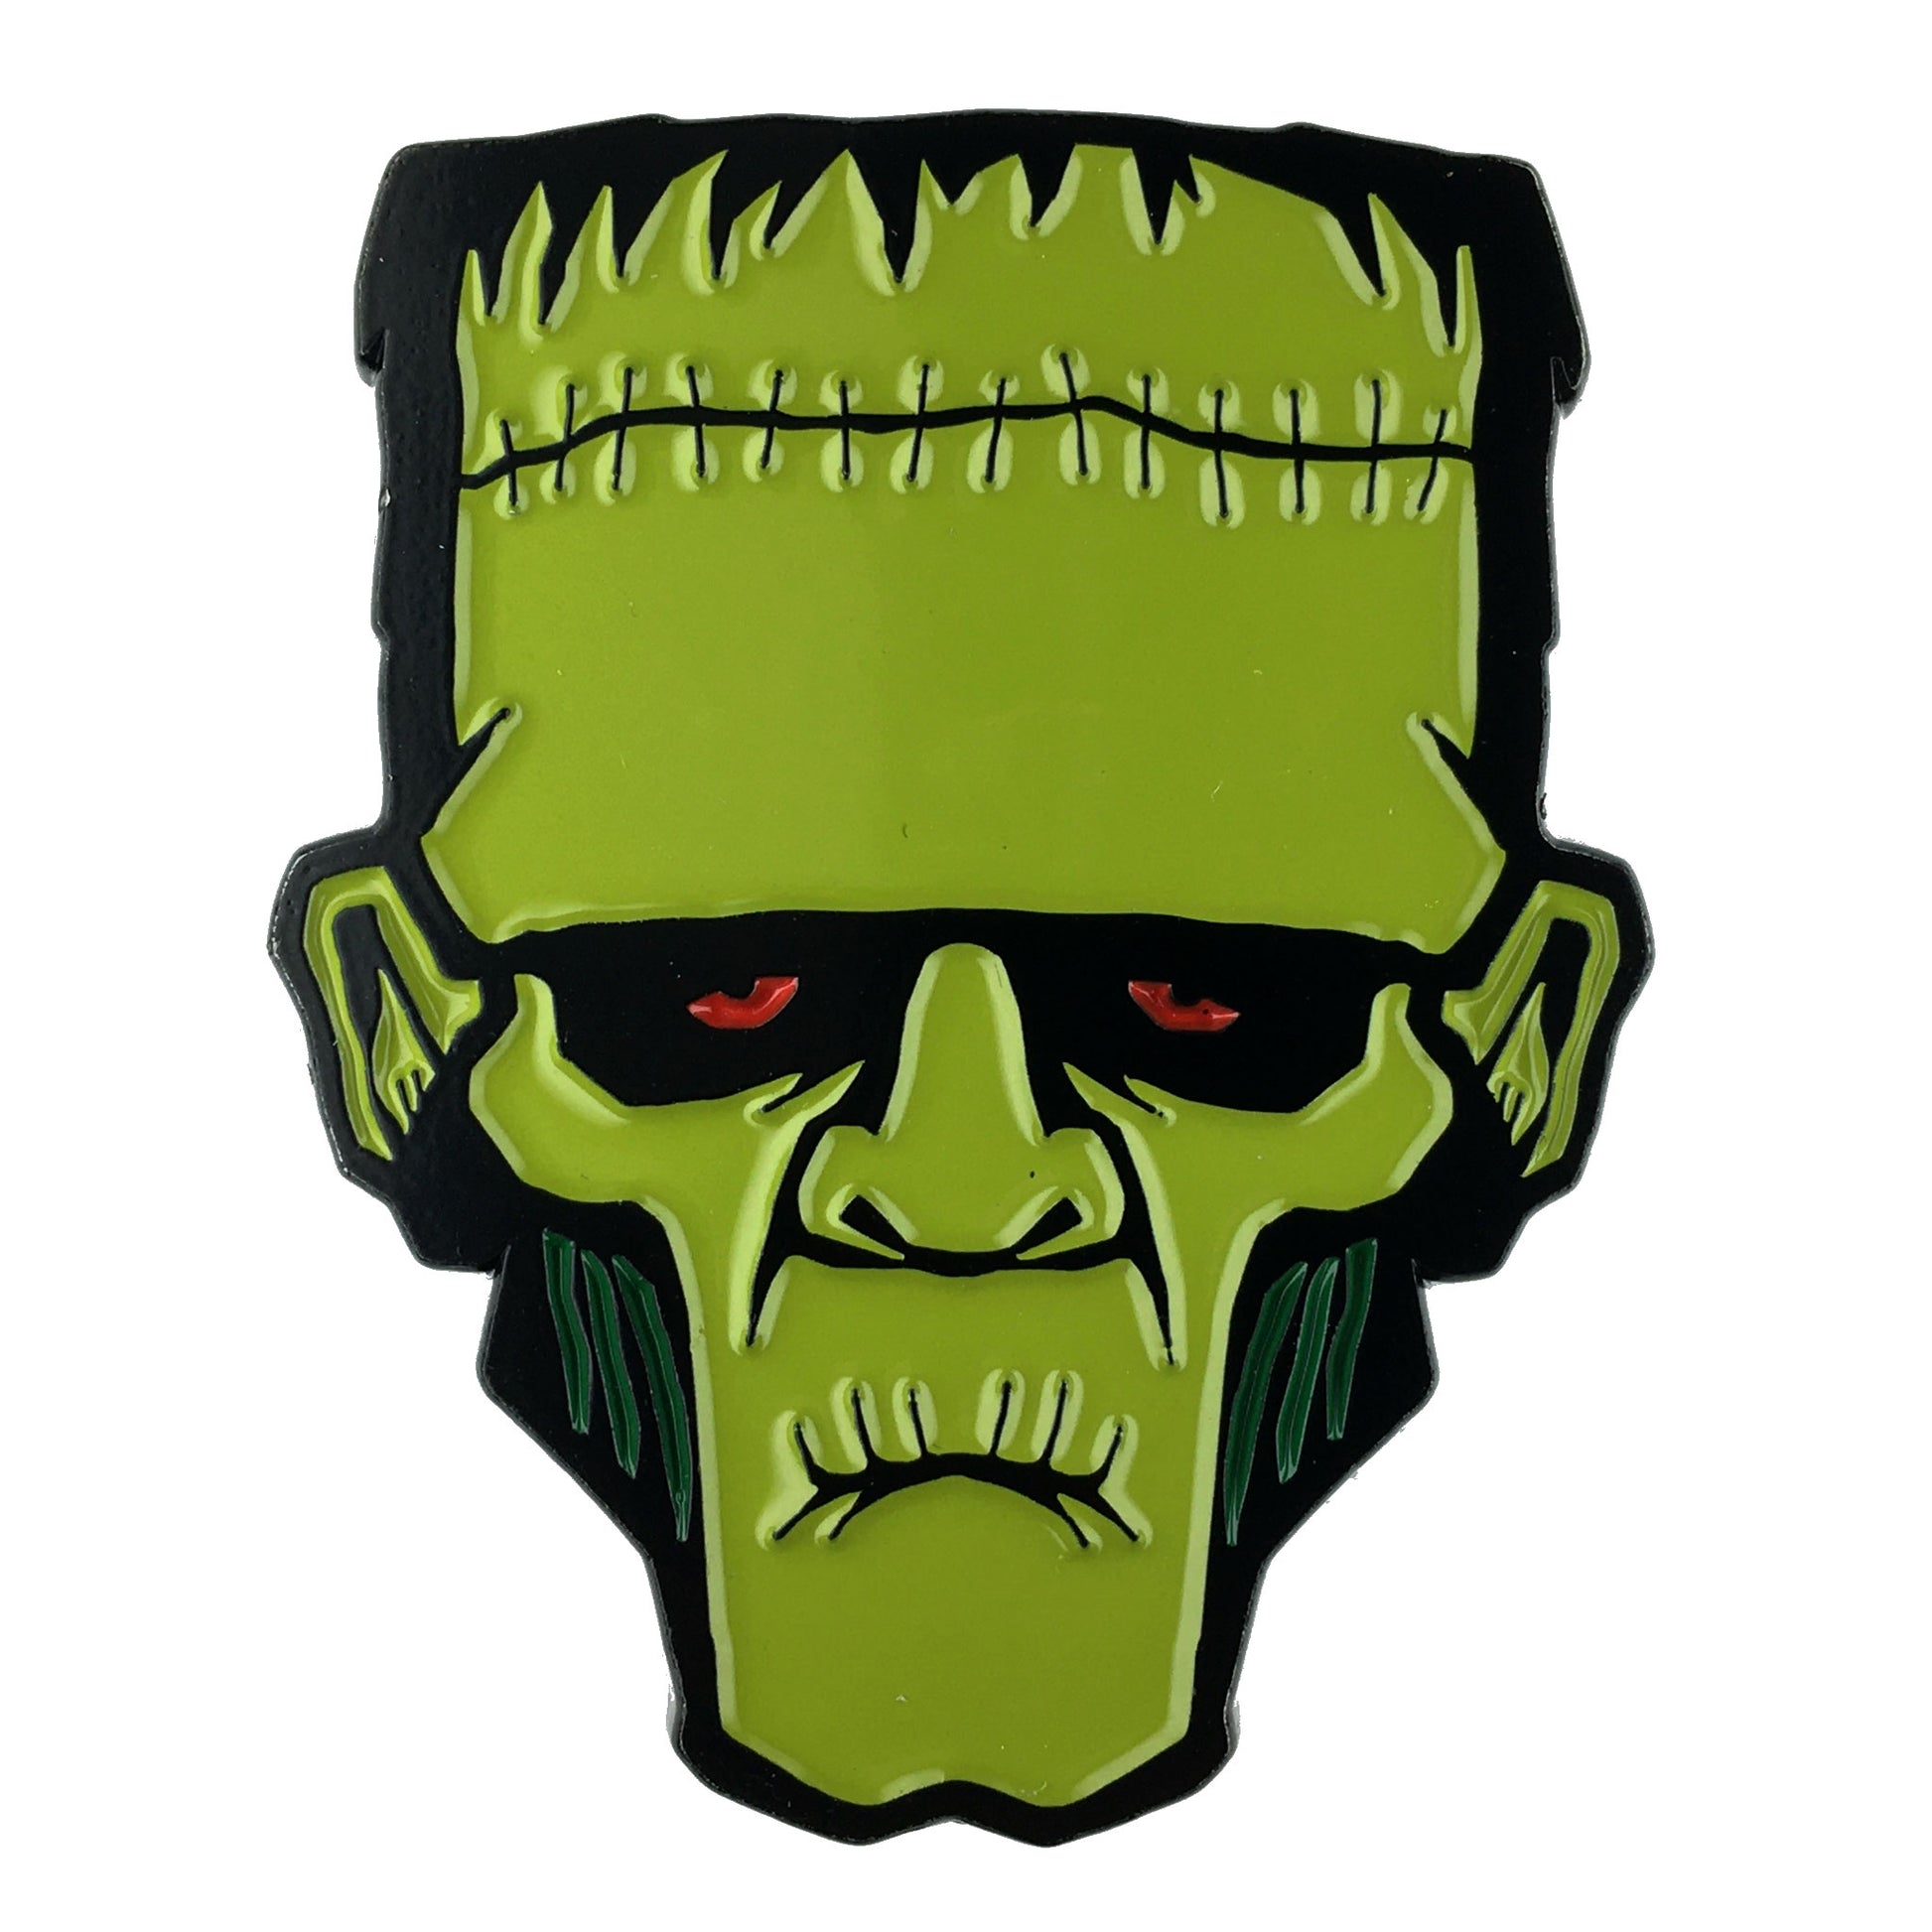 Frankenstein horror monster head enamel pin by Monsterologist